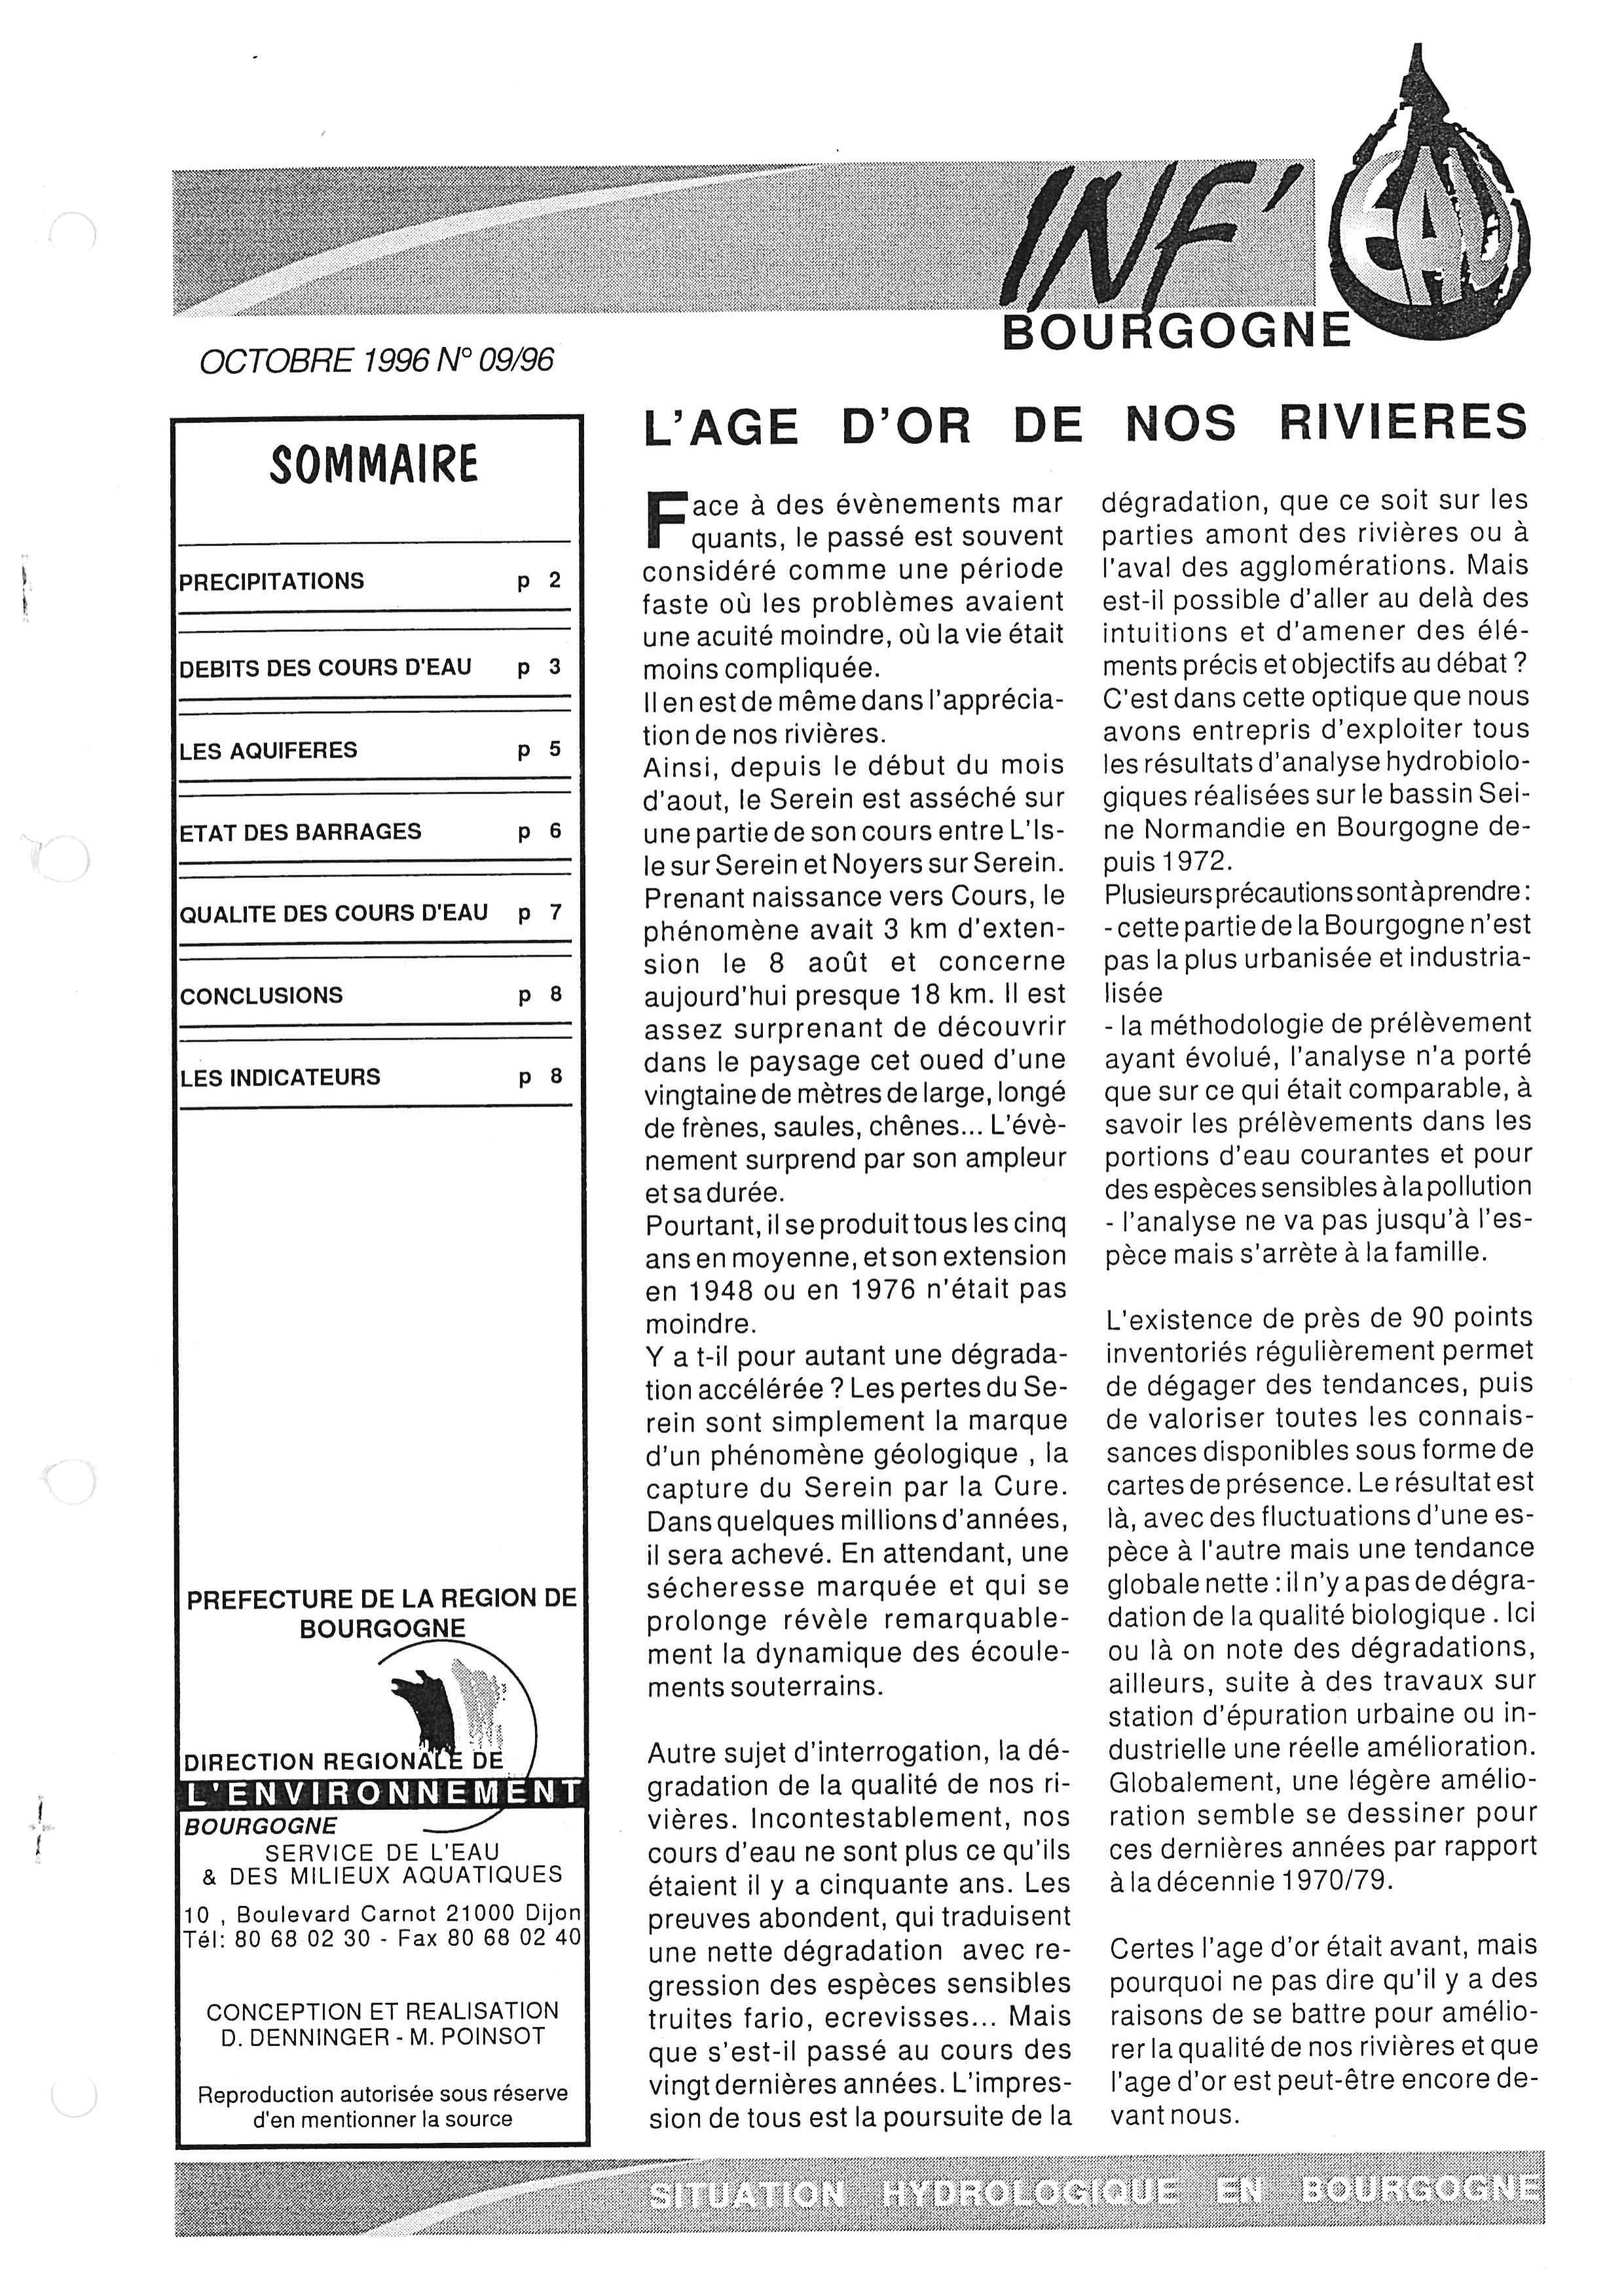 Bulletin hydrologique du mois de septembre 1996